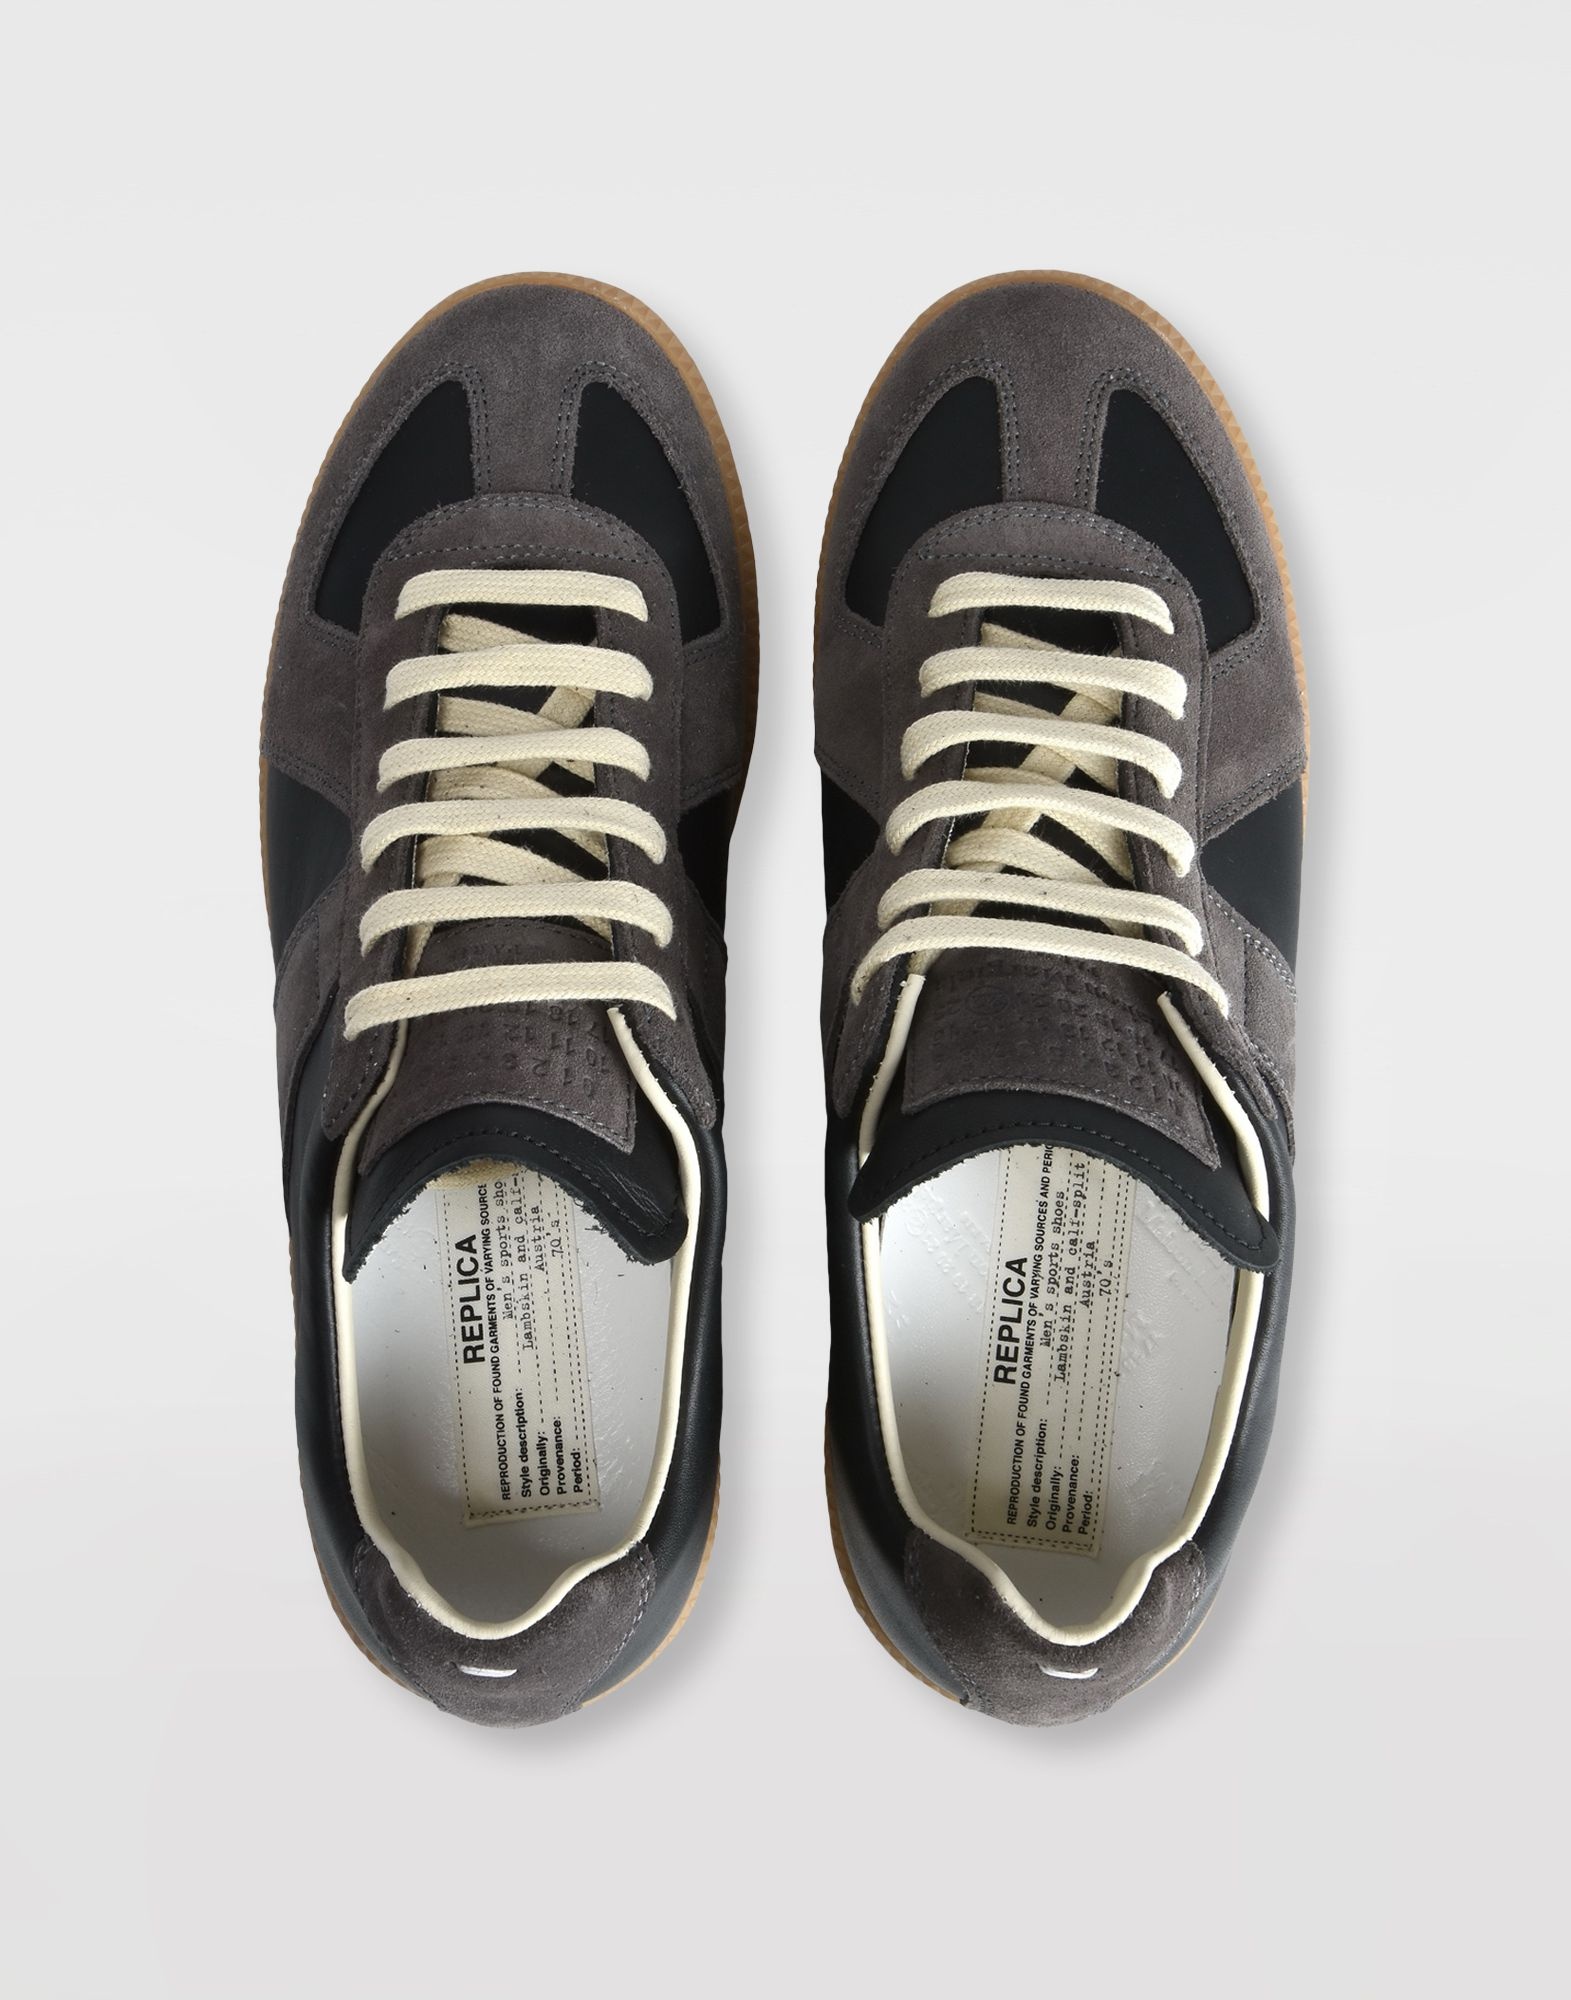 Replica sneakers - 3